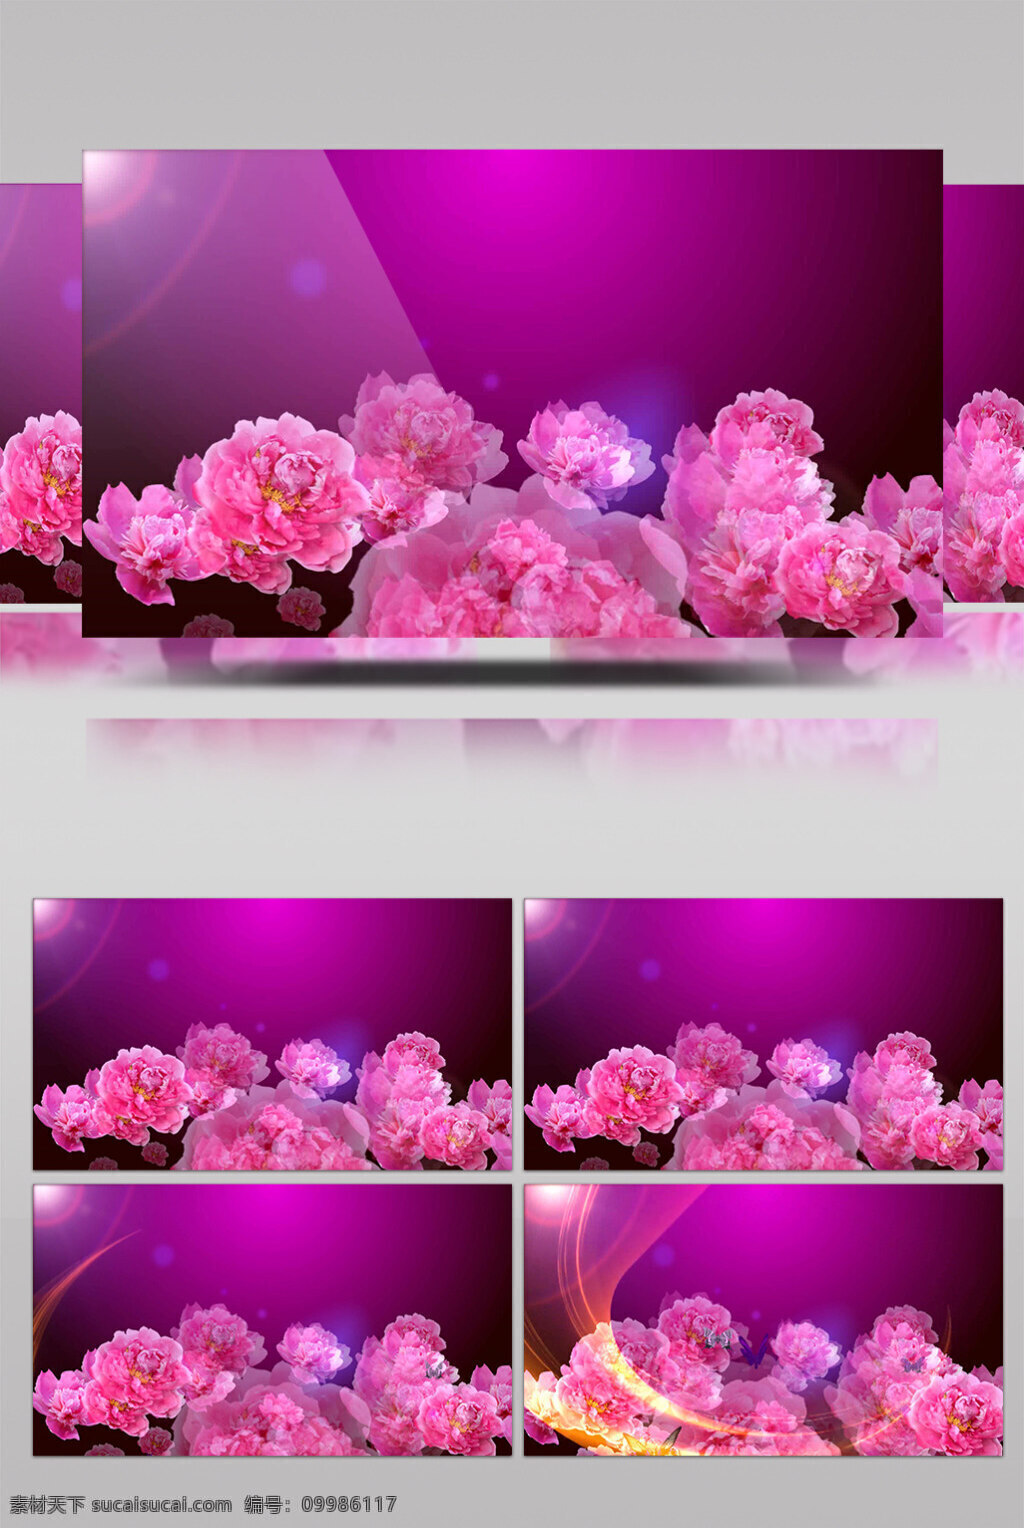 粉红 花朵 视频 粉红花朵 花朵绽开 花朵开放 美丽景色 美景动态背景 高质量 背景 好看背景素材